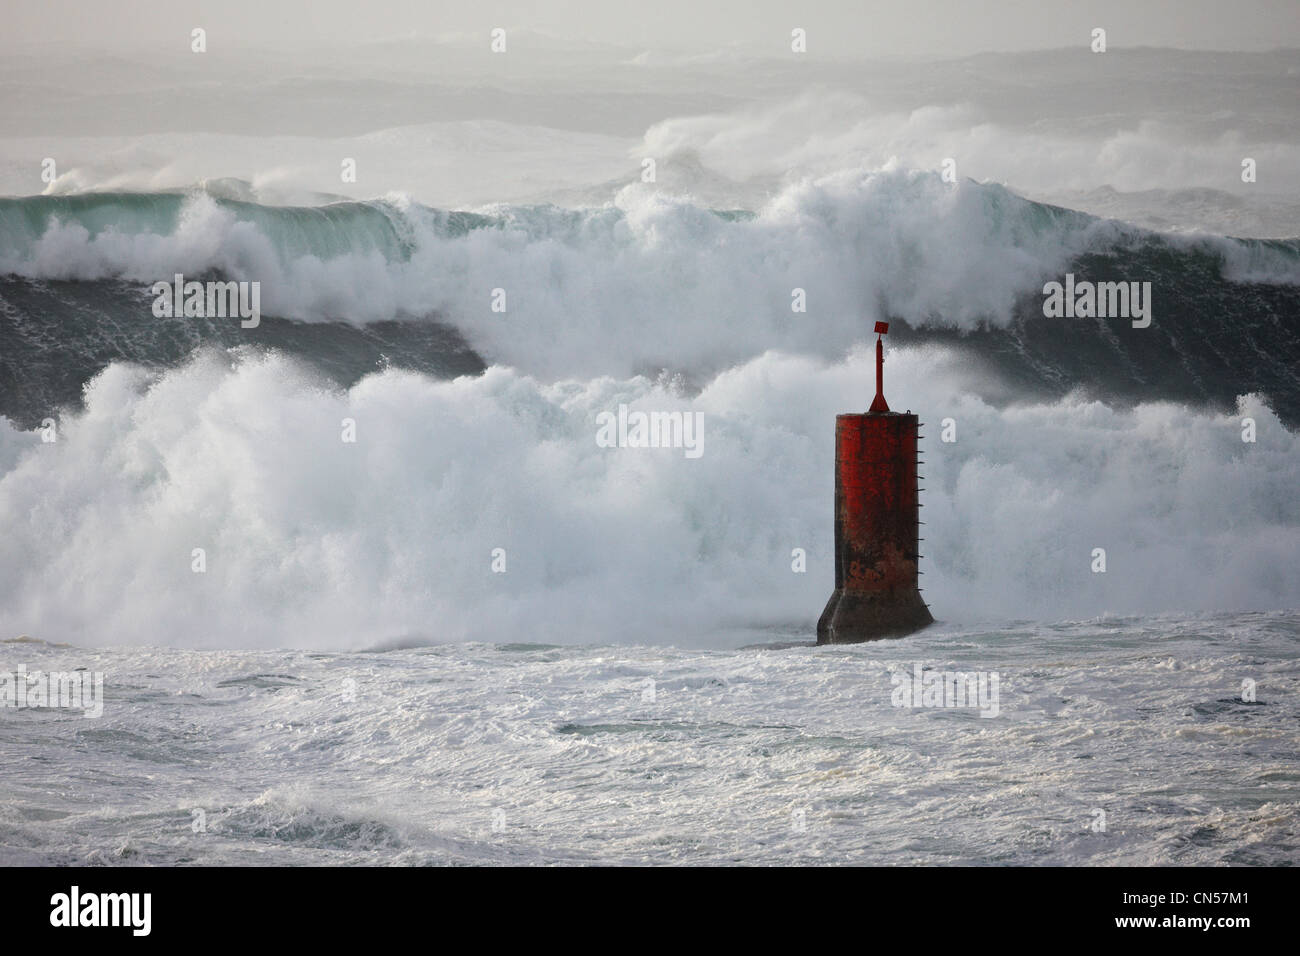 La France, Finistère, Porspoder, vagues sur le rivage au cours d'une grande rafale de vent Banque D'Images